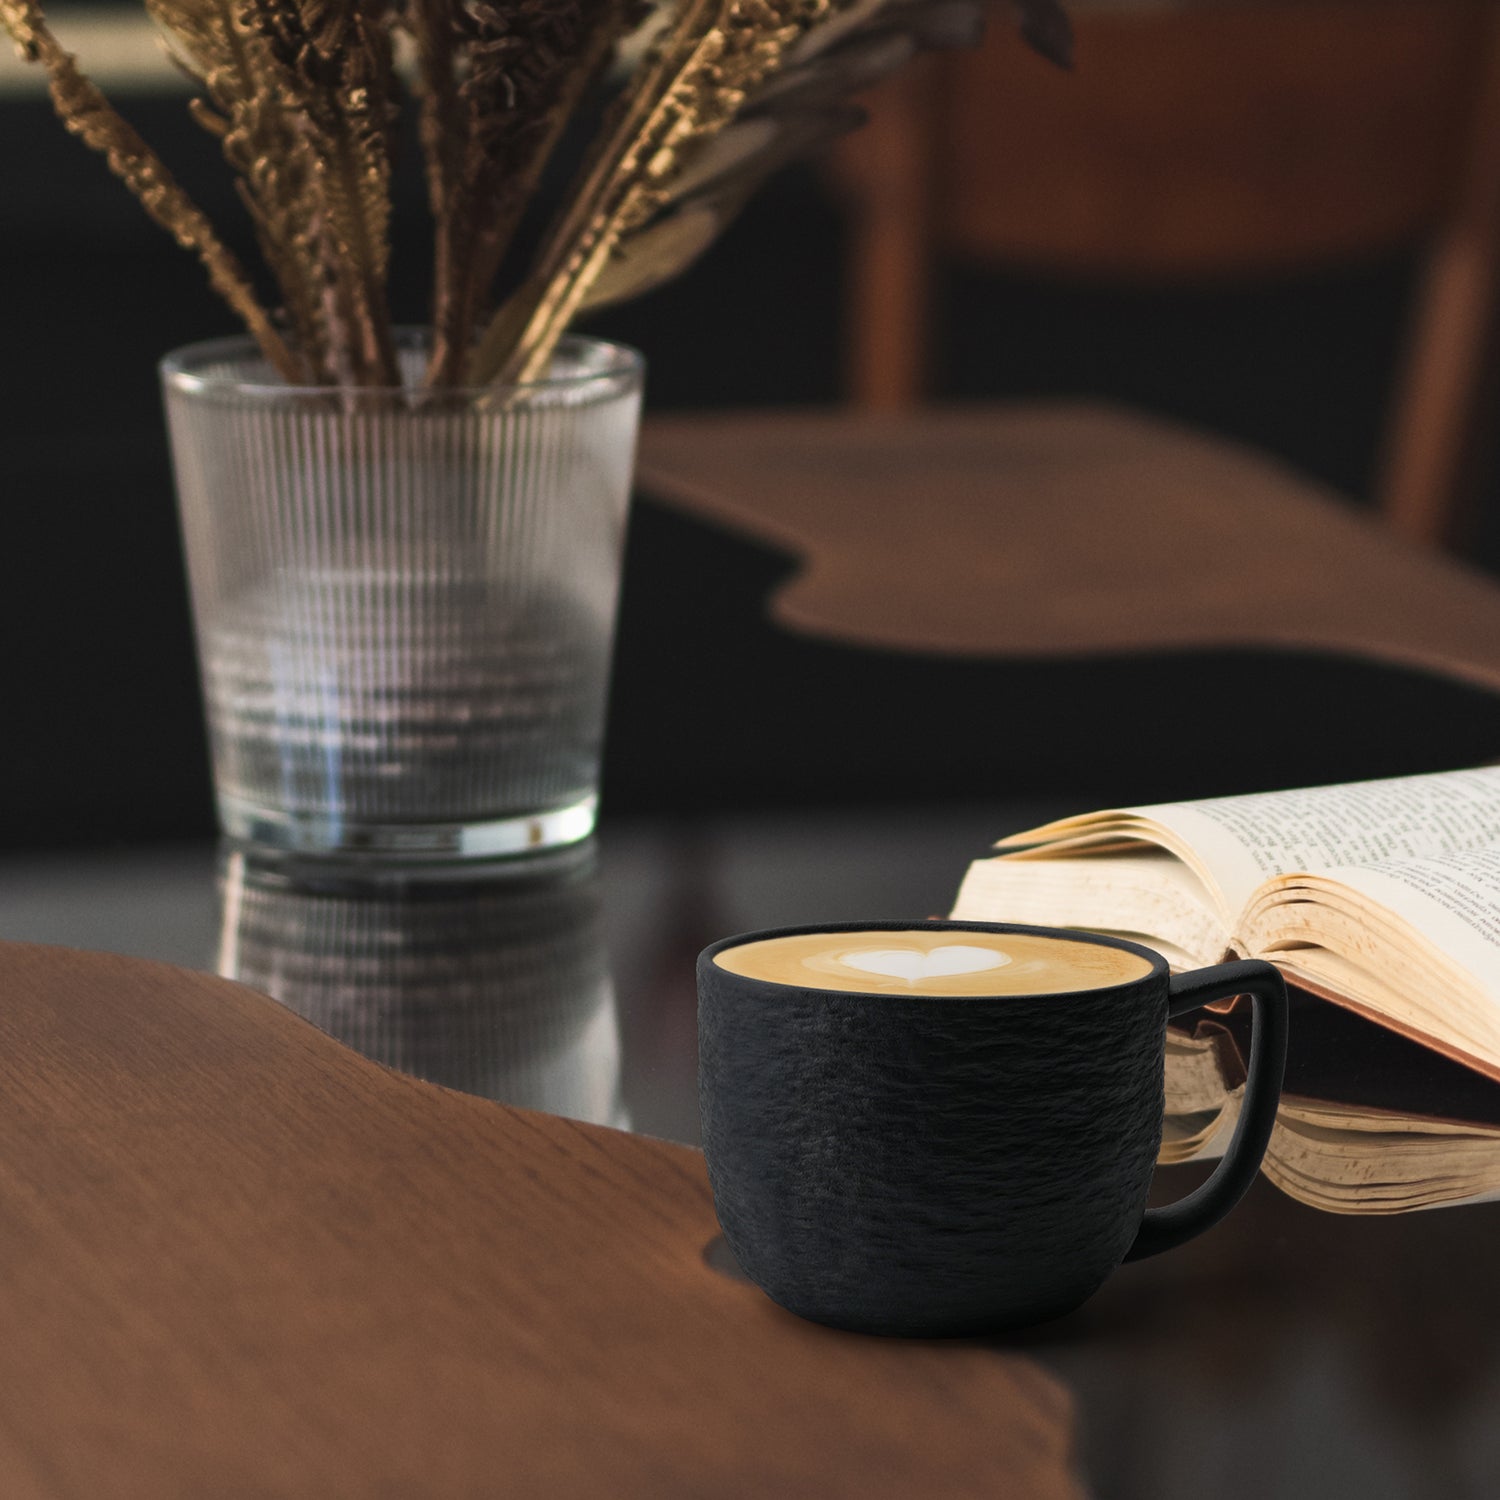 Schön angerichteter Cappuccino in einer Kaffeetasse von MIAMIO Oasis Kollektion neben einem geöffneten Buch und Pflanze im Hintergrund